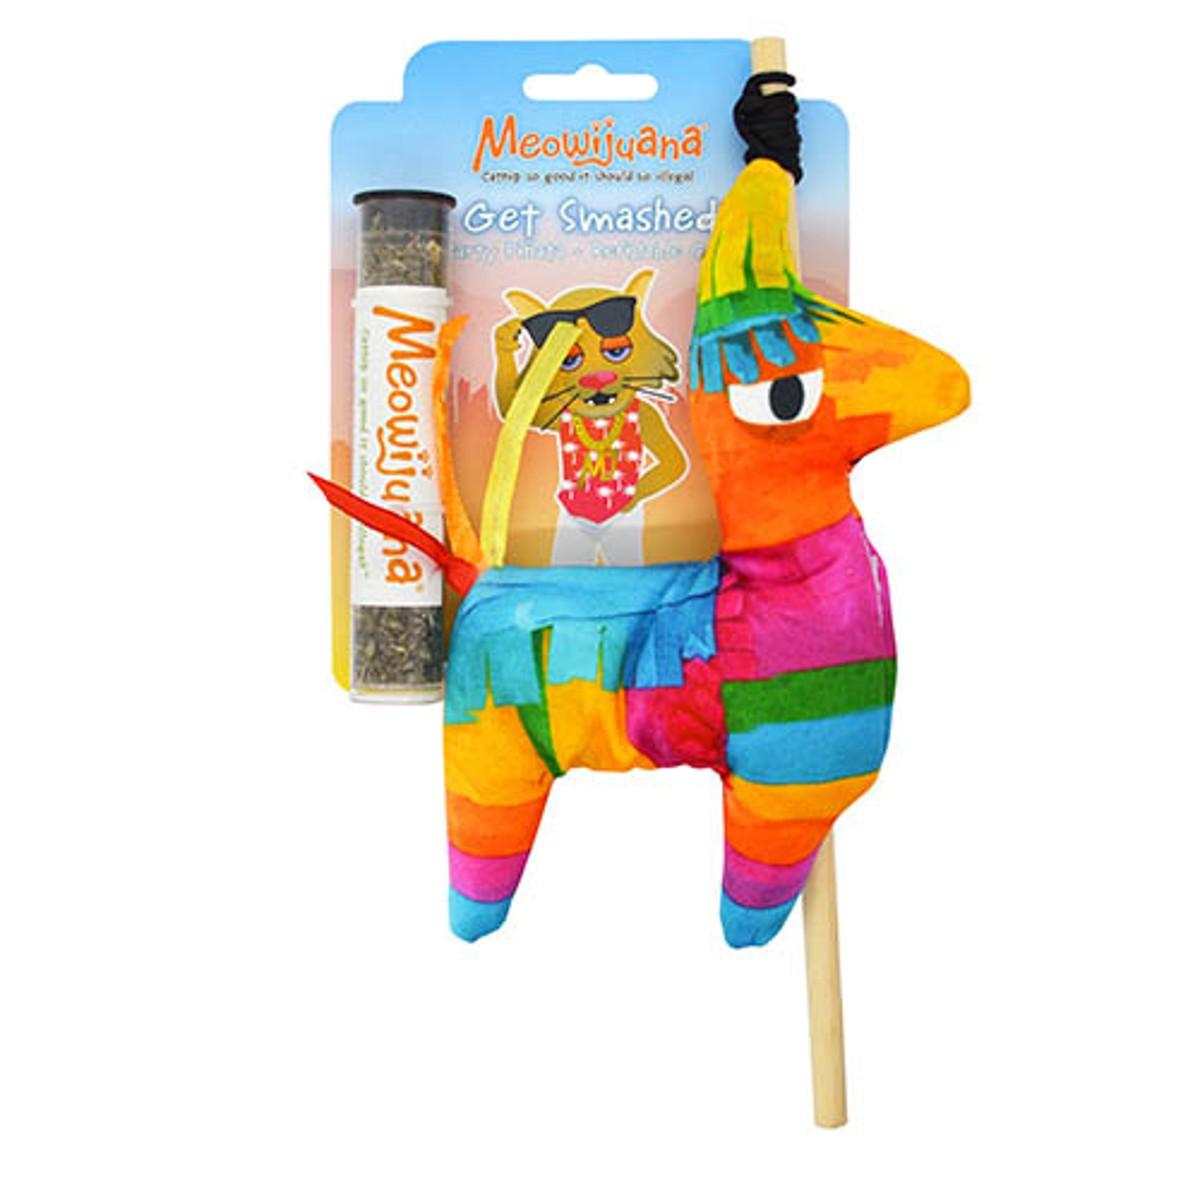 Meowijuana Get Smashed Refillable Cat Toy - Llama Piñata